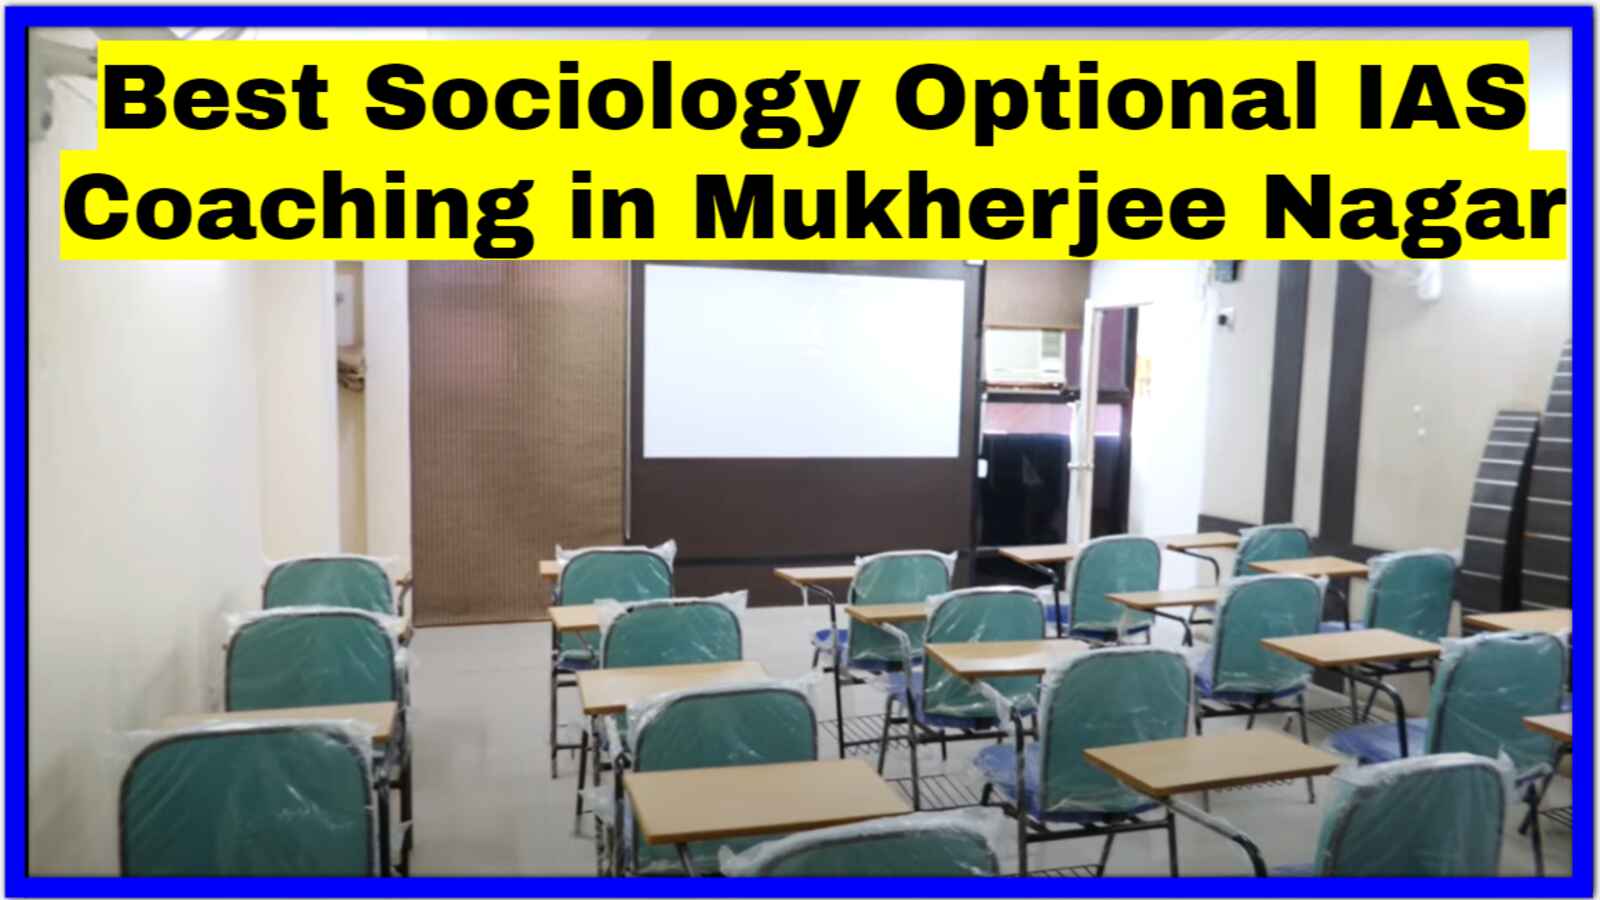 Best Sociology Optional IAS Coaching in Mukherjee Nagar